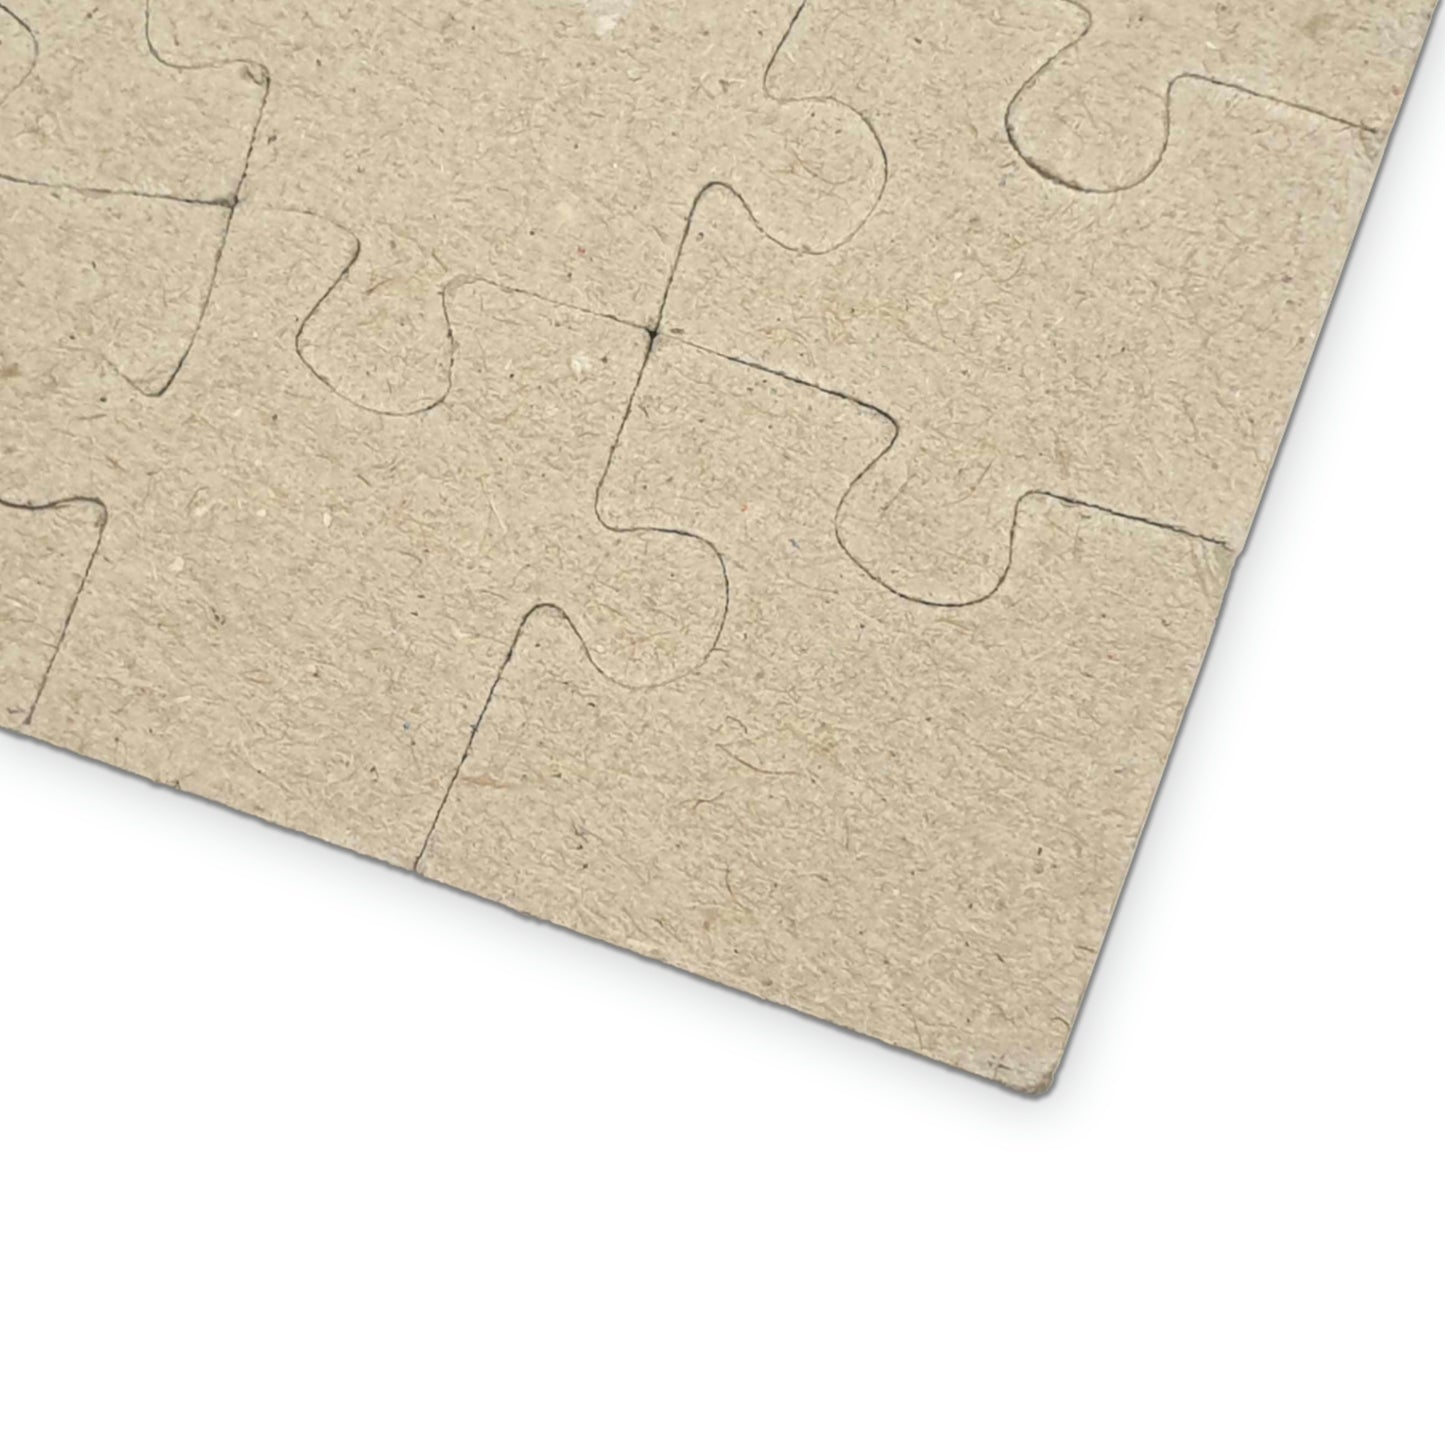 Kalopsia - 1000 Piece Jigsaw Puzzle